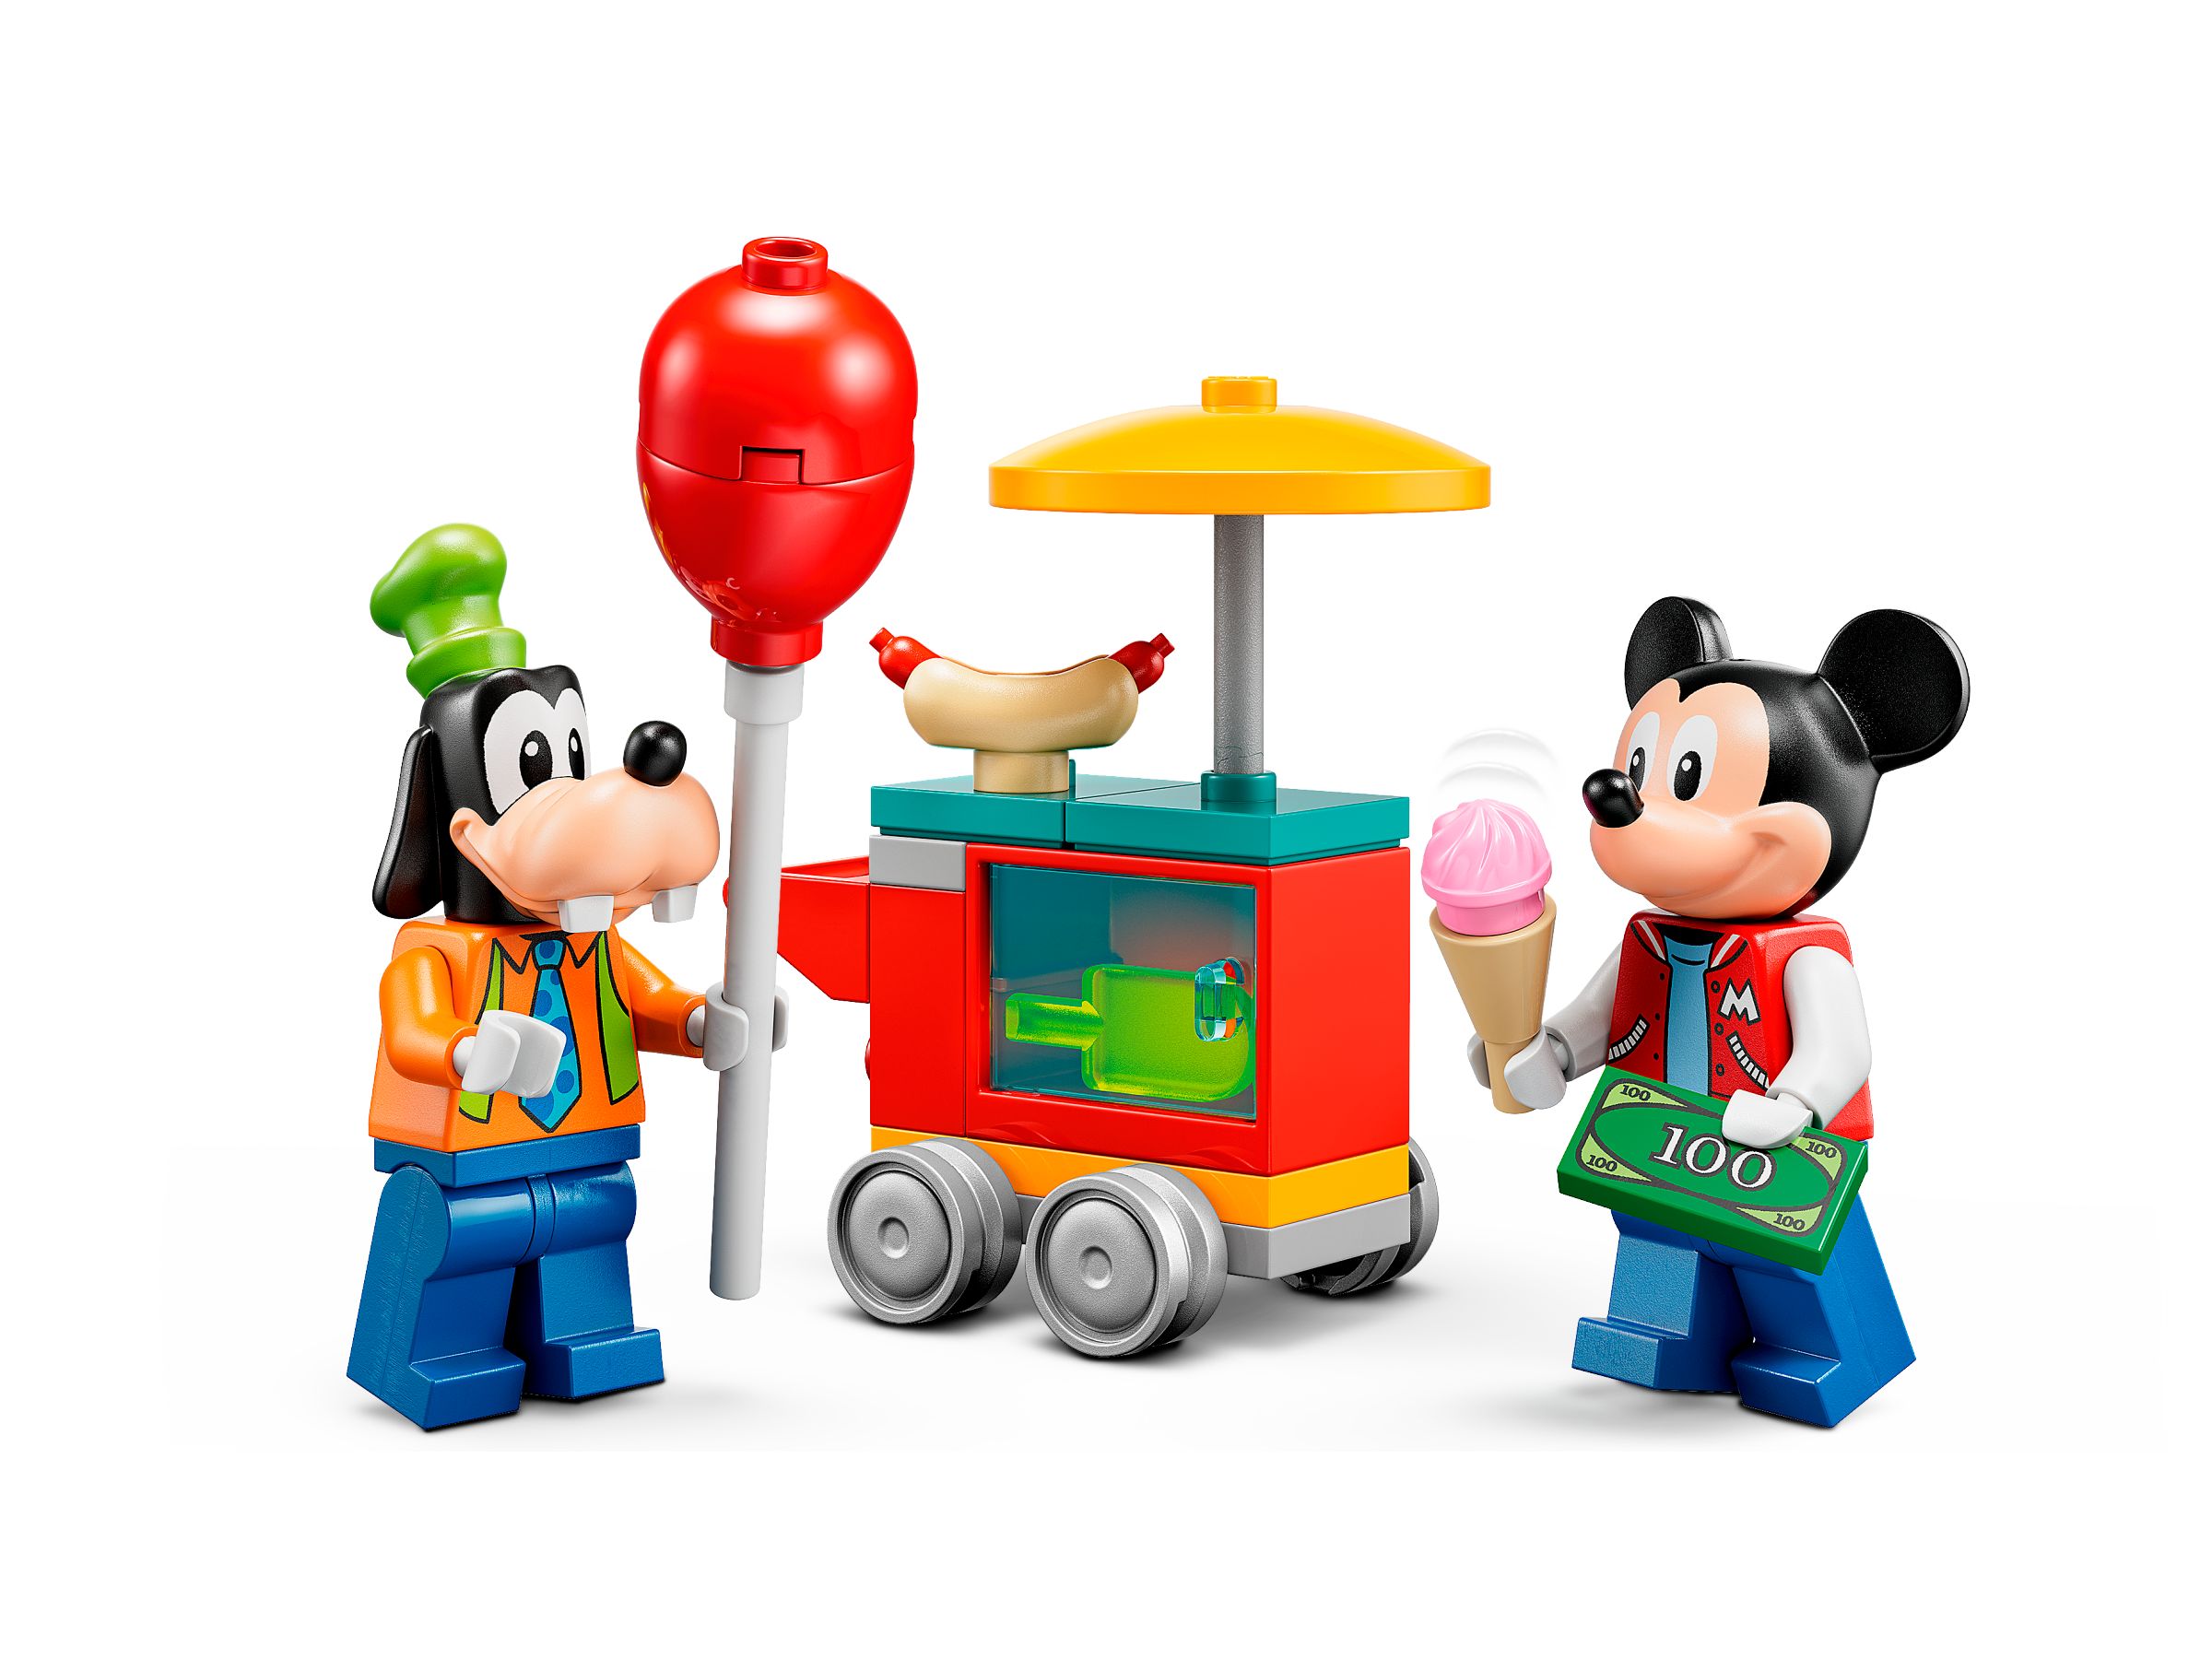 LEGO Disney 10778 Micky, Minnie und Goofy auf dem Jahrmarkt LEGO_10778_alt4.jpg